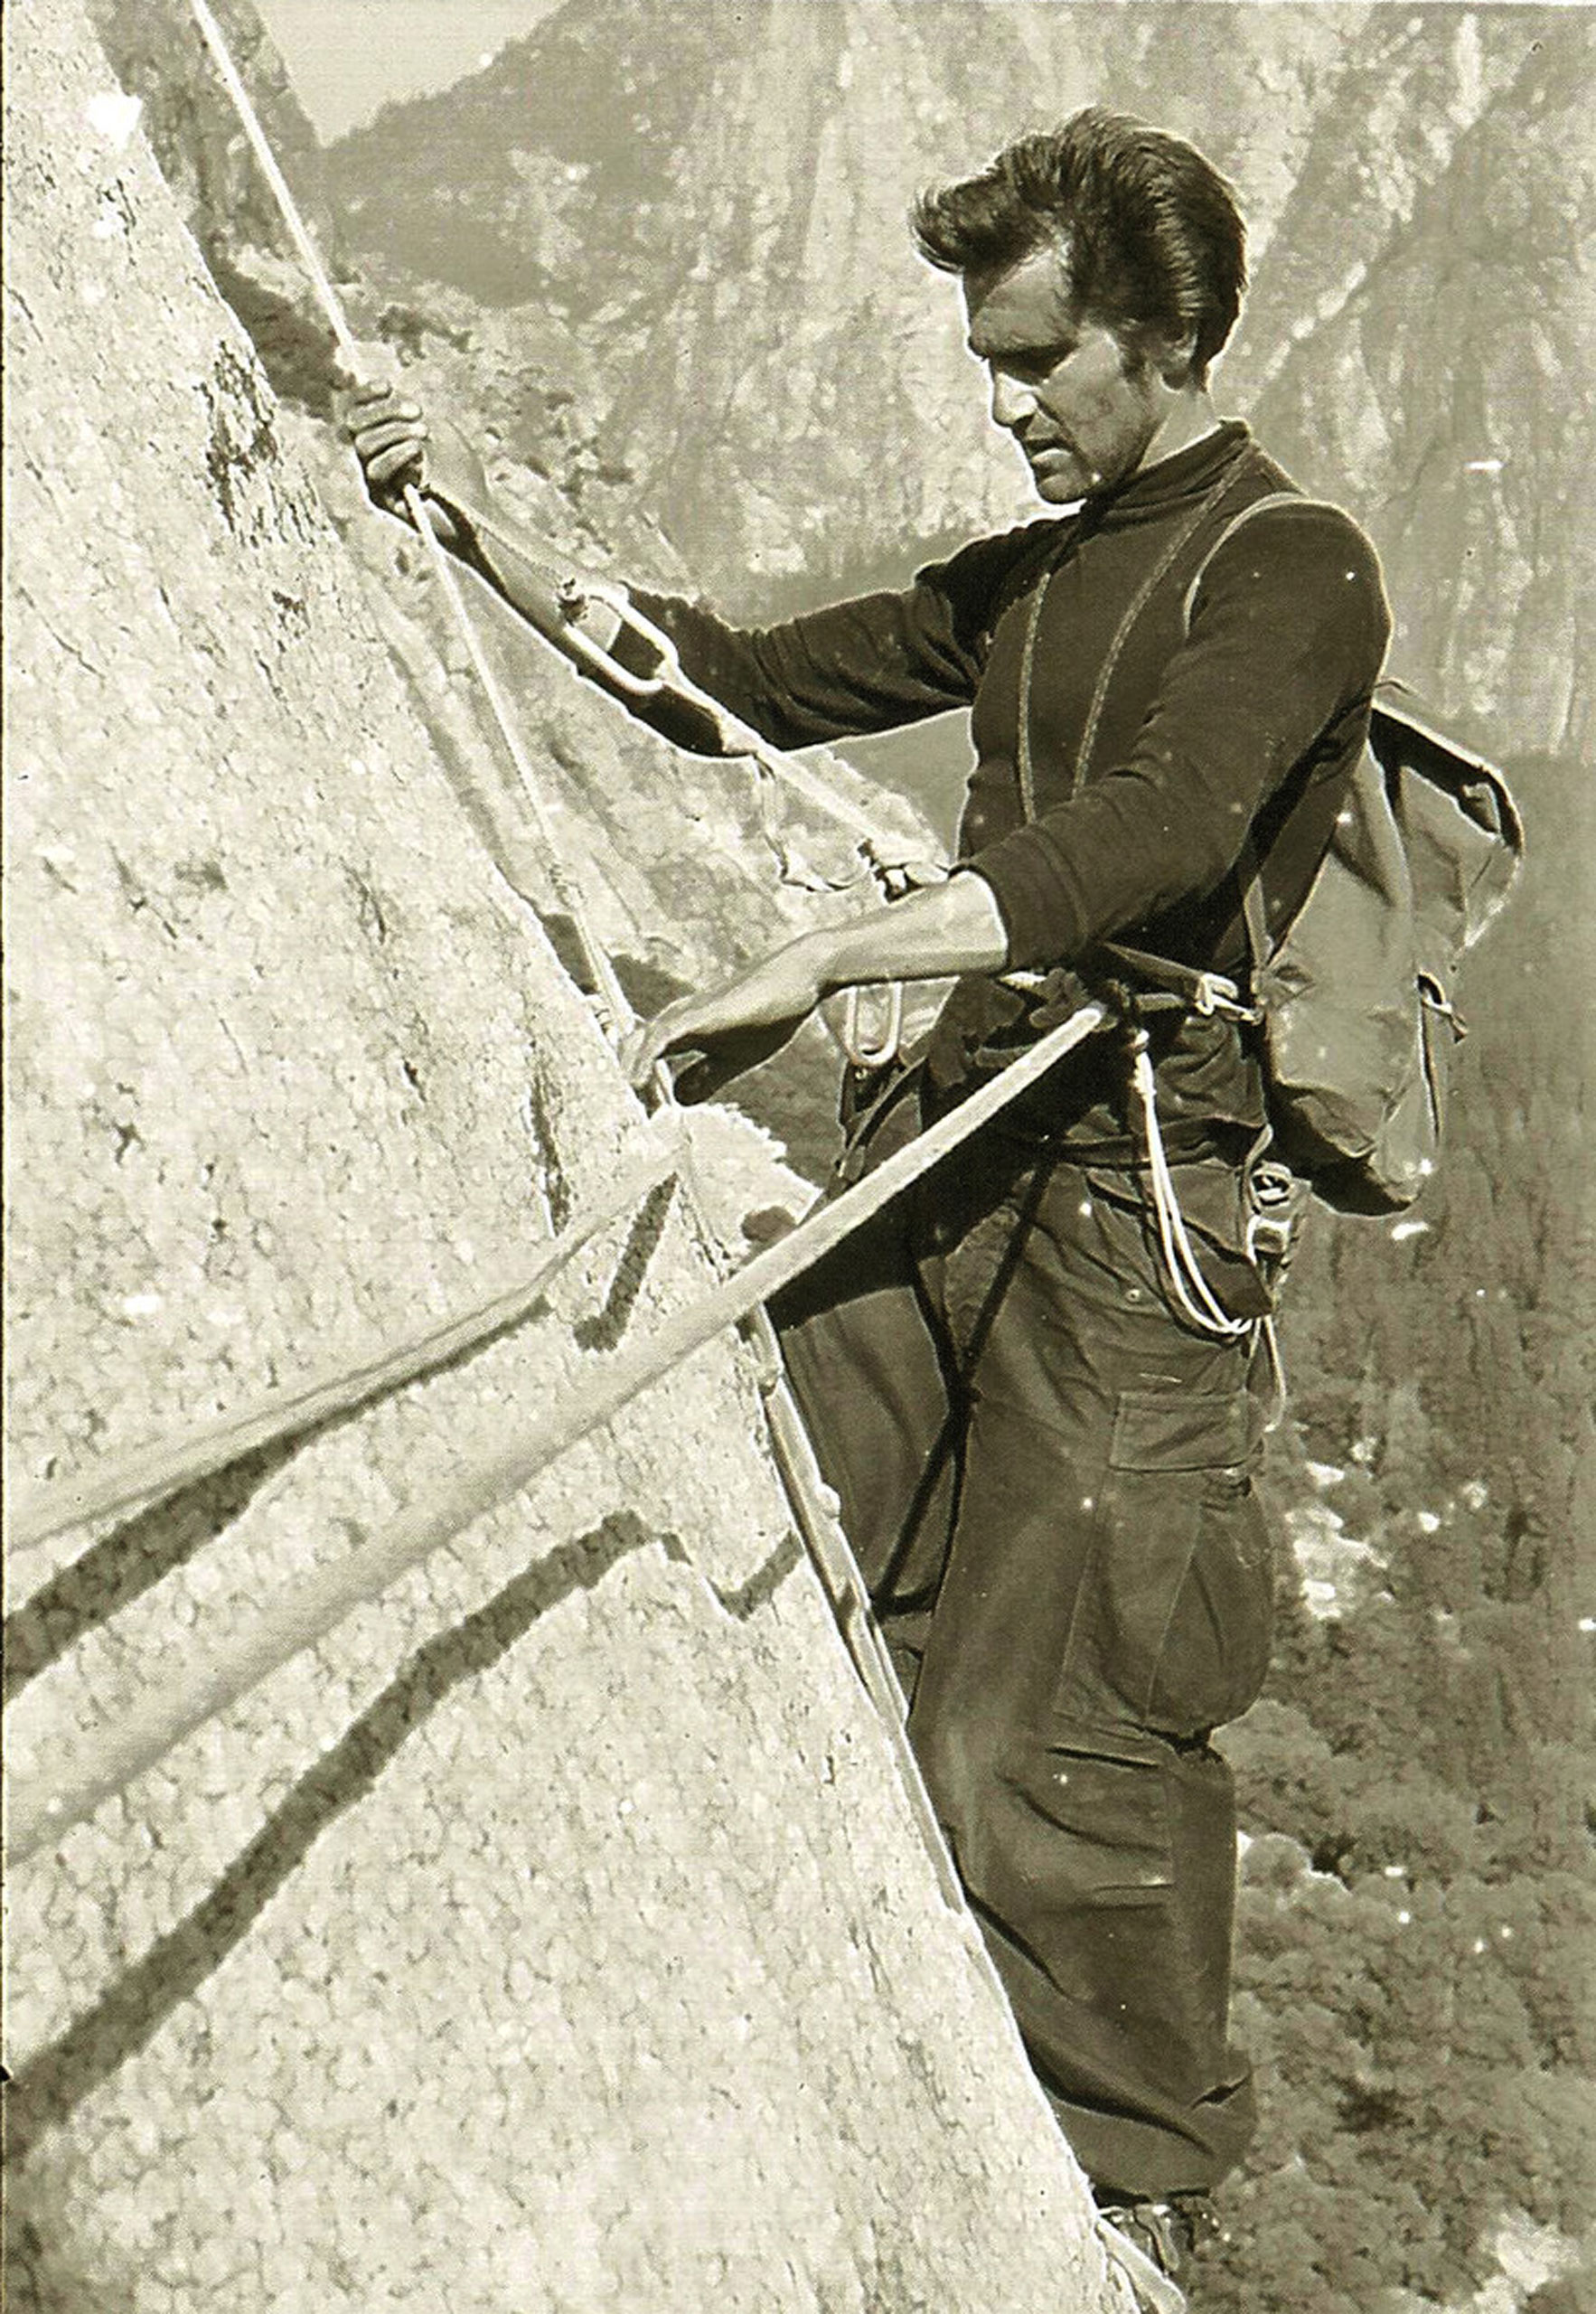 1958: Warren Harding climbs the Nose